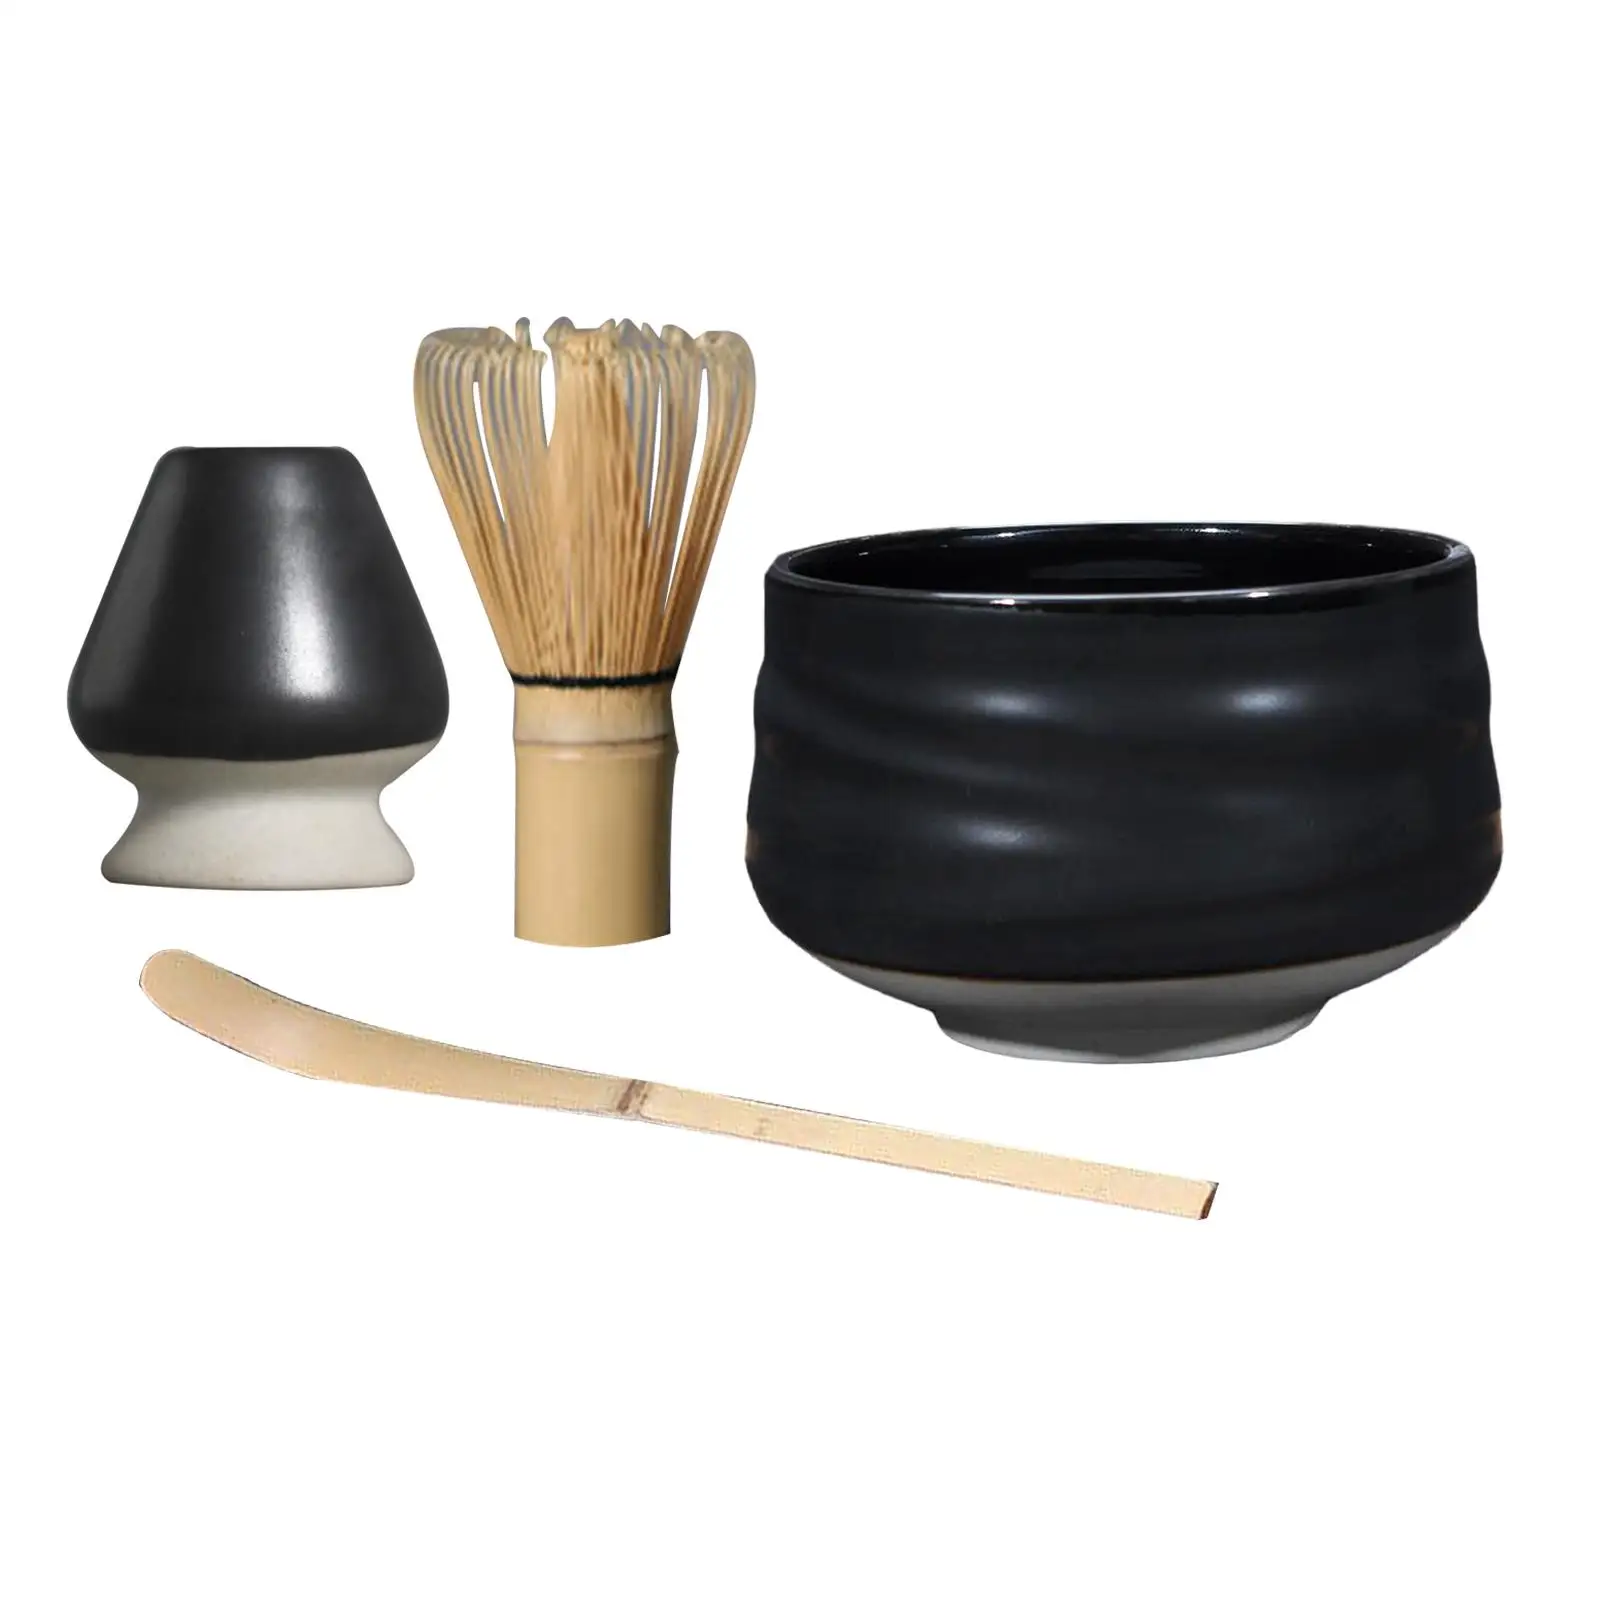 Japanese Style, Matcha Whisk Holder, for Tea Room Ceramics Matcha Whisk Holder, Matcha Scoop, Matcha Chasen Whisk Stand,